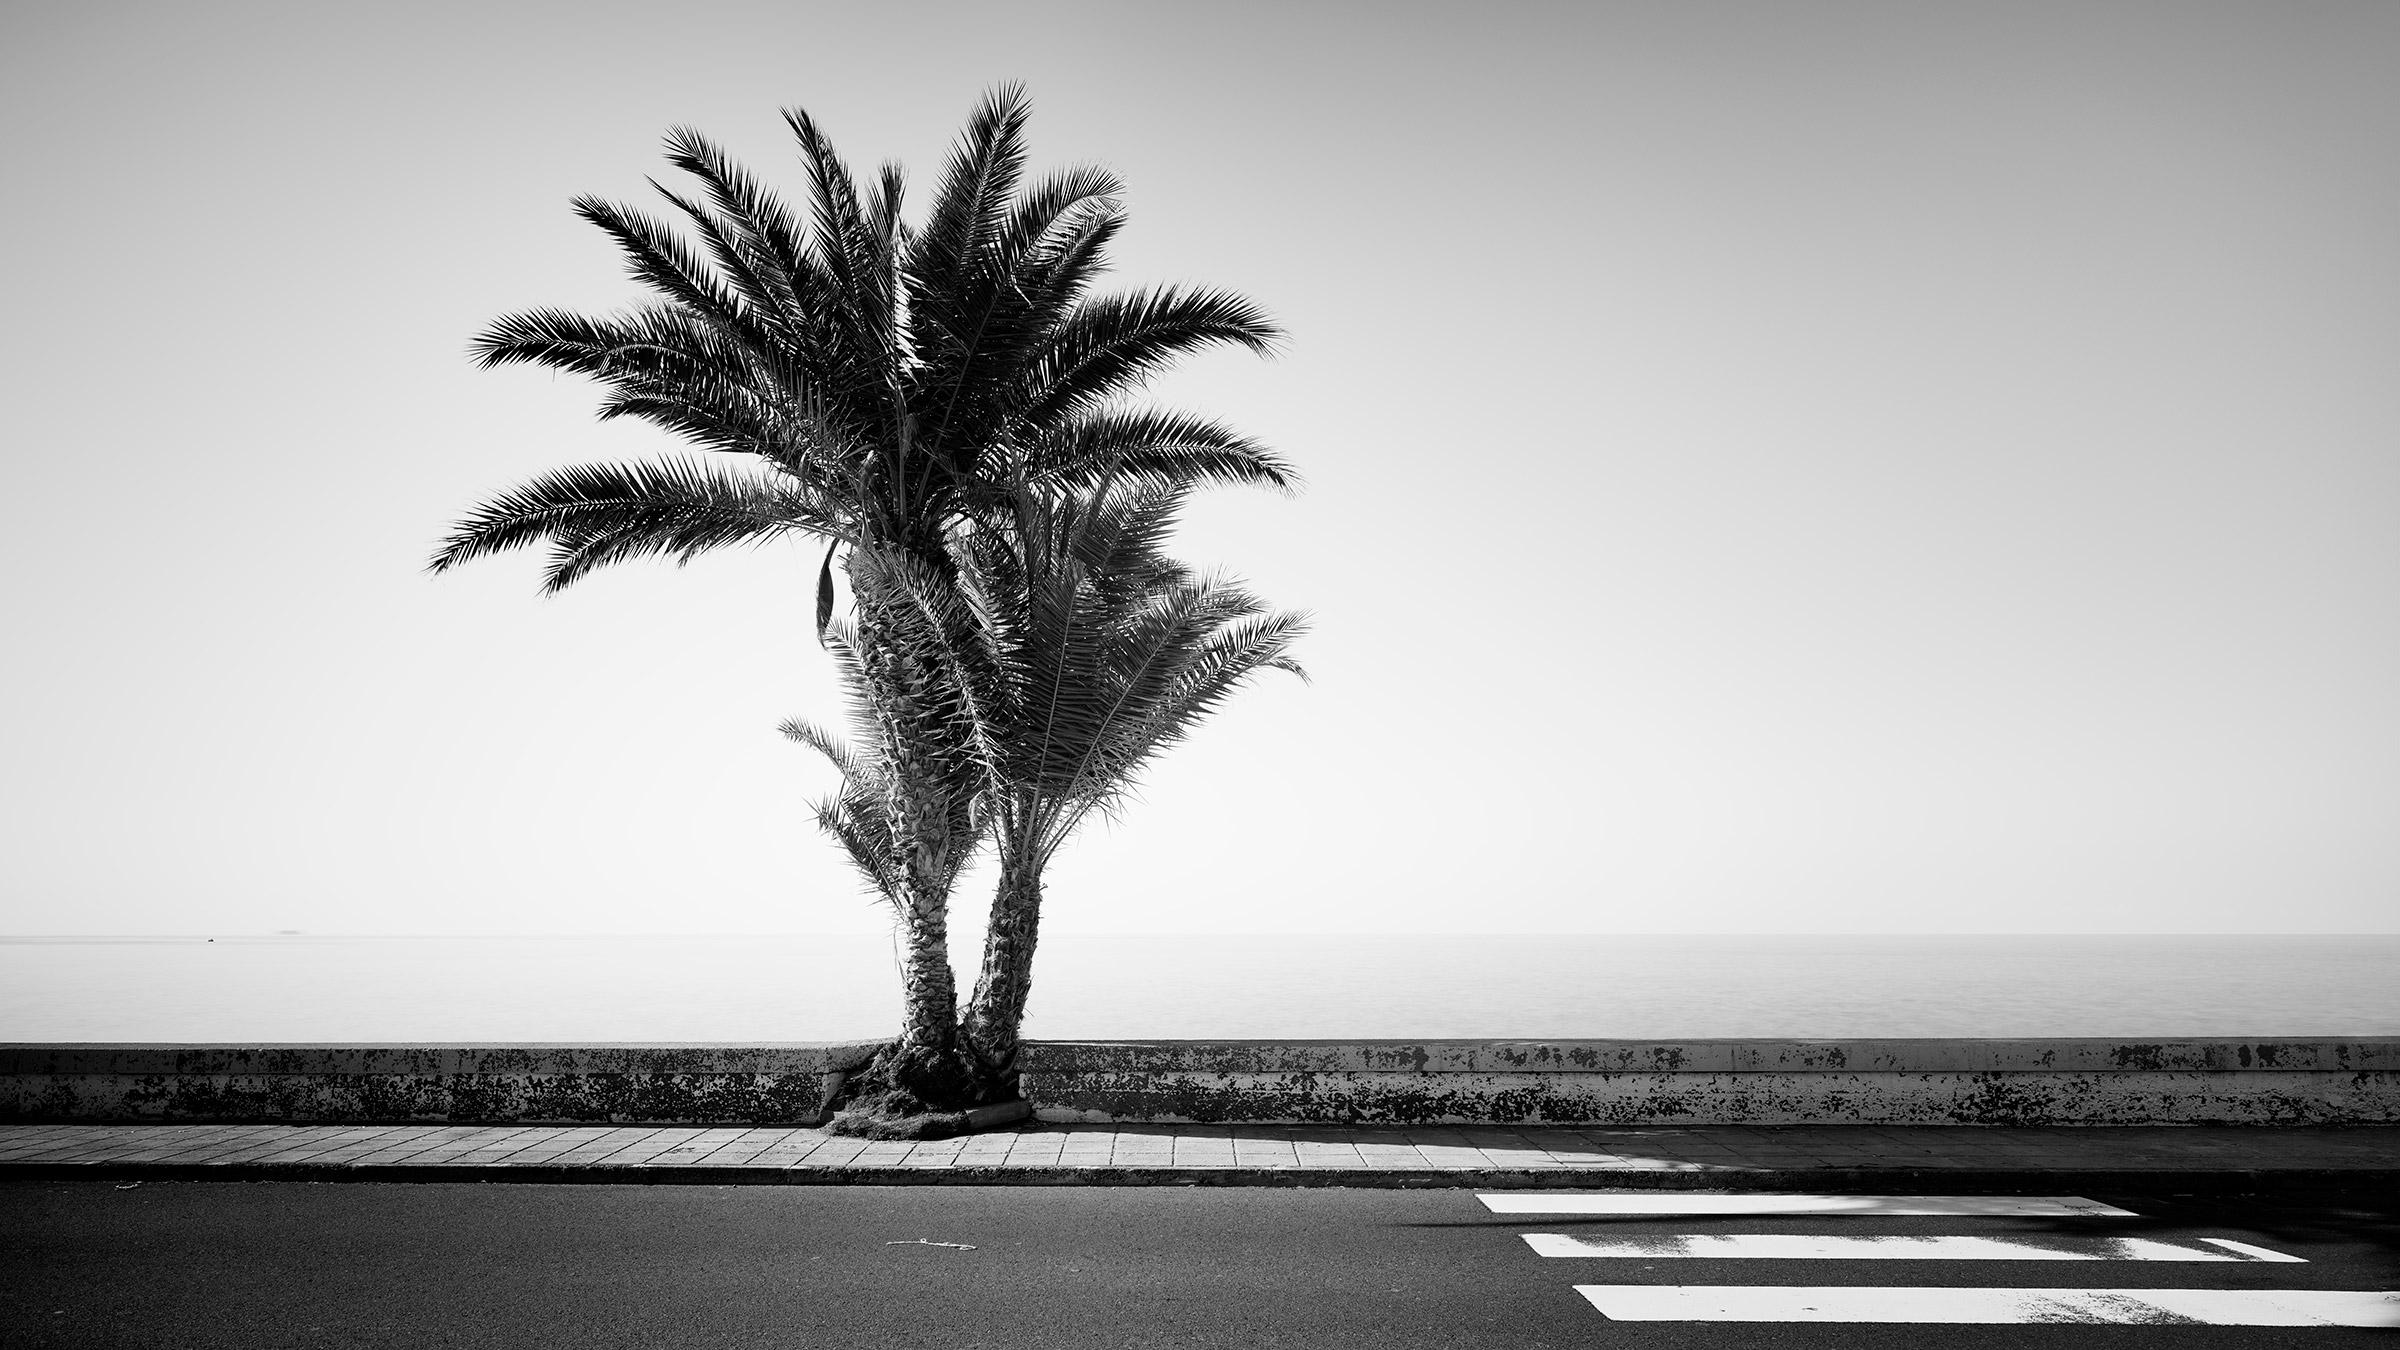 Palmiers sur le bord de la route, Portugal, Photographie noir et blanc, paysage